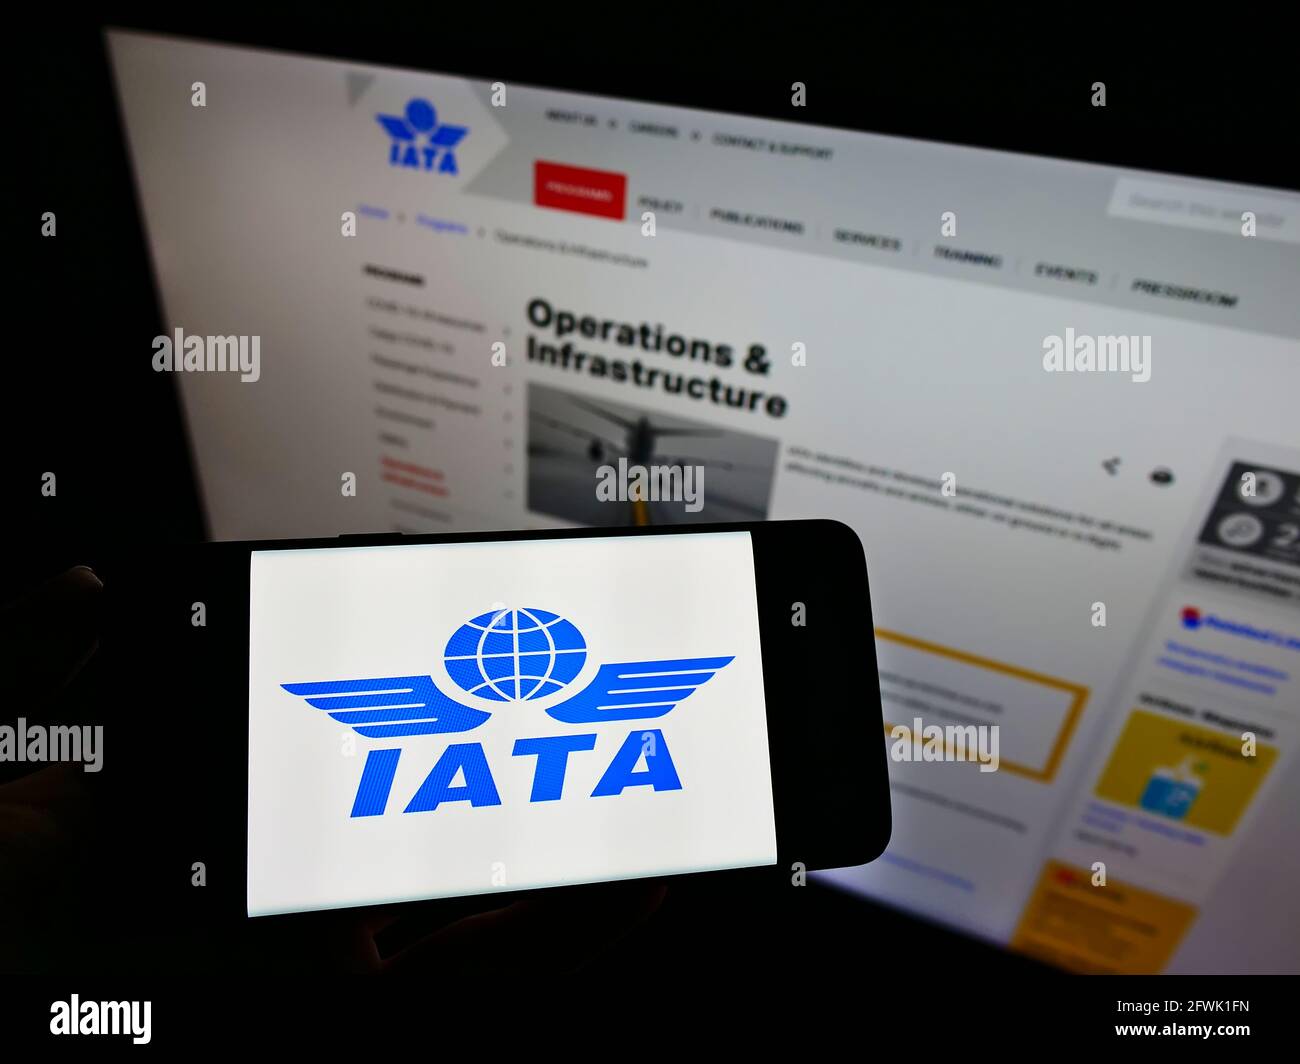 Persona in possesso di smartphone con il logo della International Air Transport Association (IATA) sullo schermo davanti alla pagina Web. Focus sul display del cellulare. Foto Stock